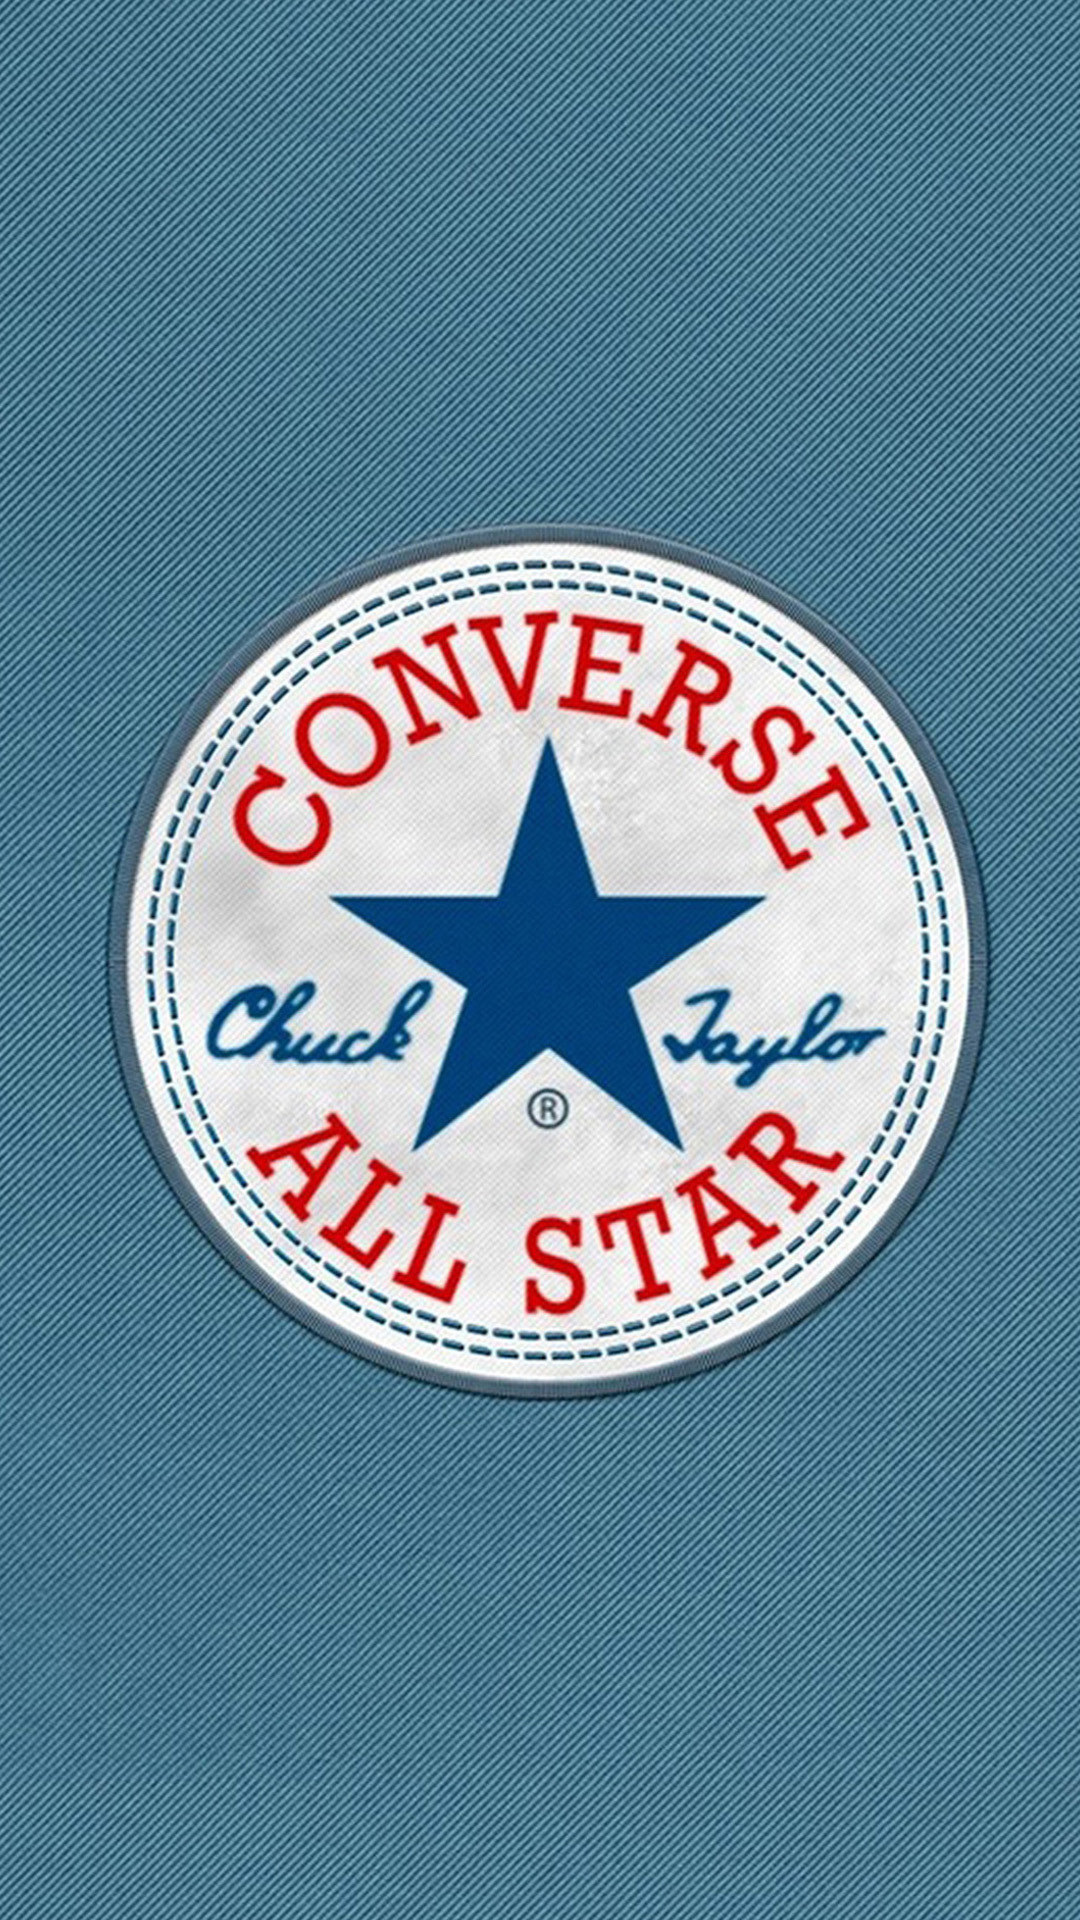 1080x1920 Converse All Star Wallpaper - Brands HD Wallpapers - HDwallpapers.net ...